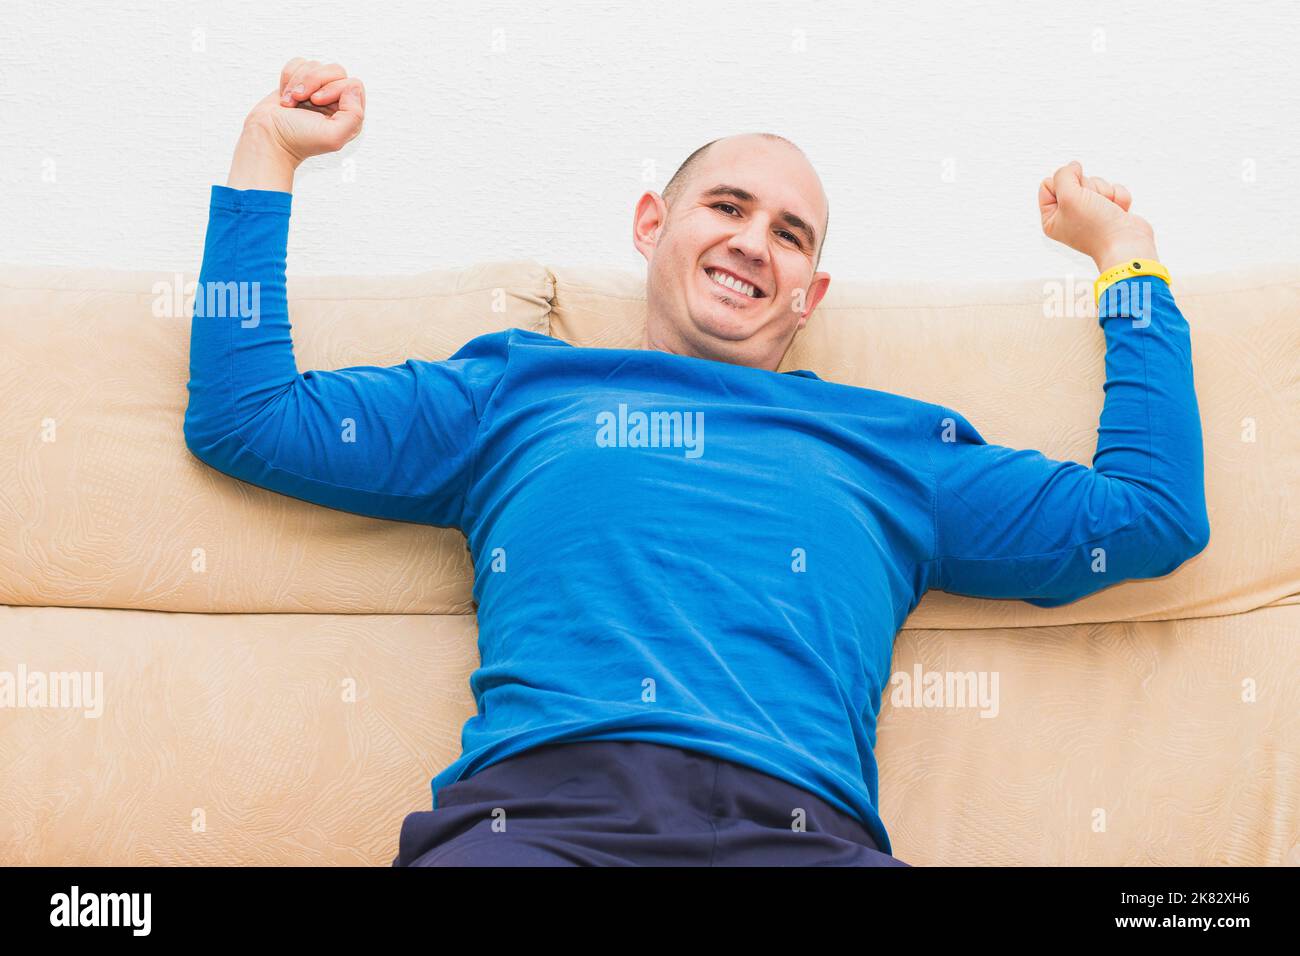 Un homme casien bald vêtu d'un t-shirt bleu à manches longues s'étire sur un canapé. Banque D'Images